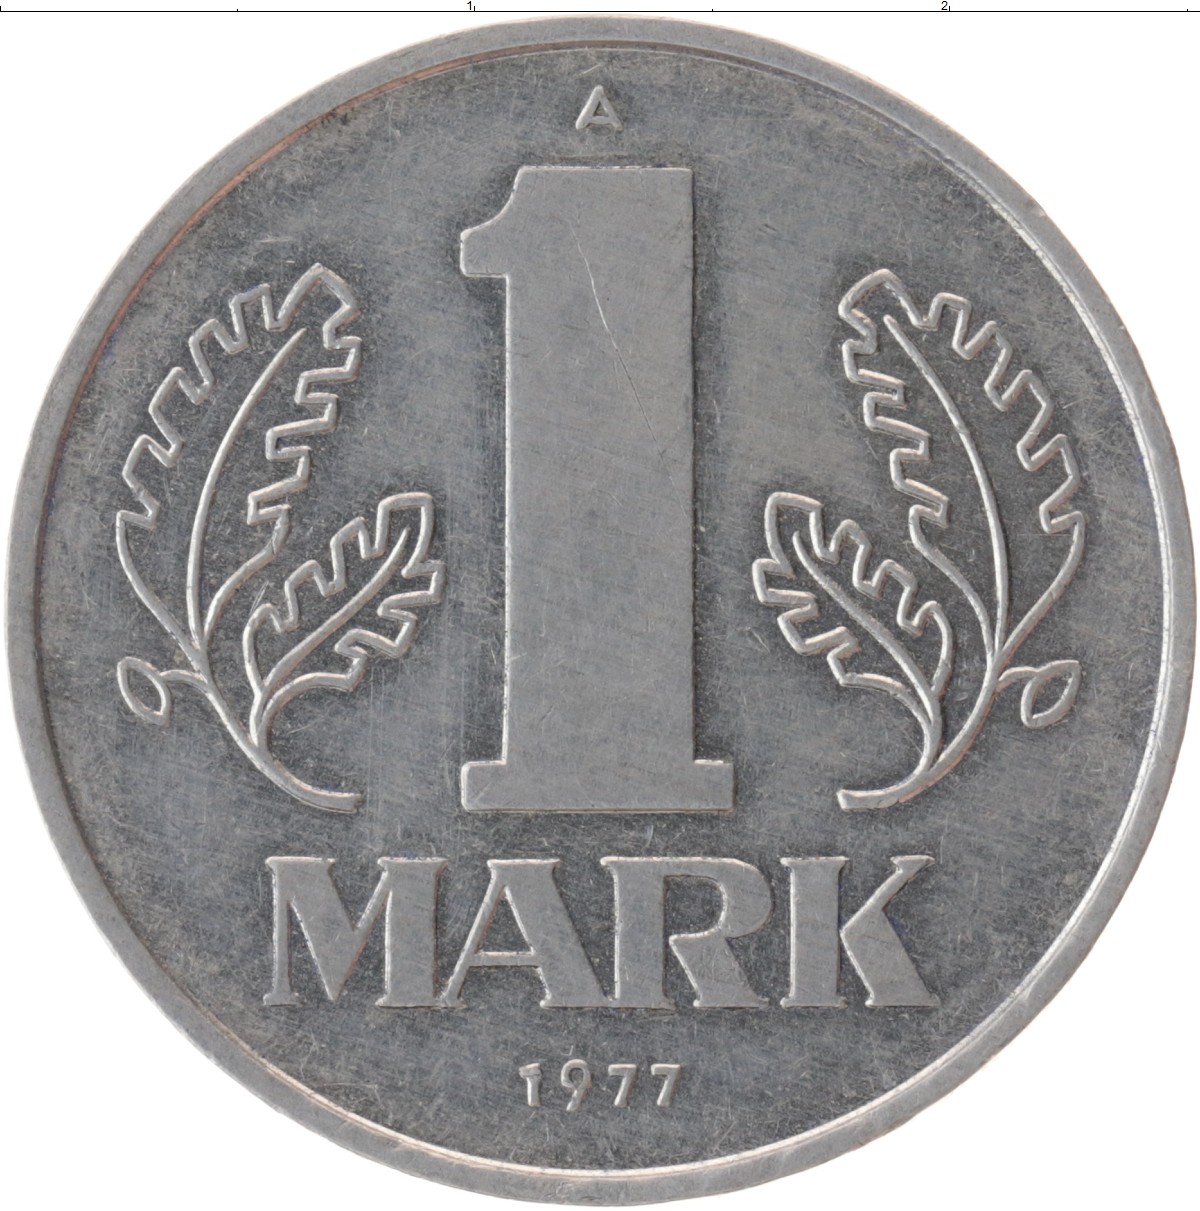 1 mark each. 1 Марка ГДР. Германия - ГДР 1 марка, 1956-1963. 1 Марка ГДР 1990. Дойч марки ГДР.